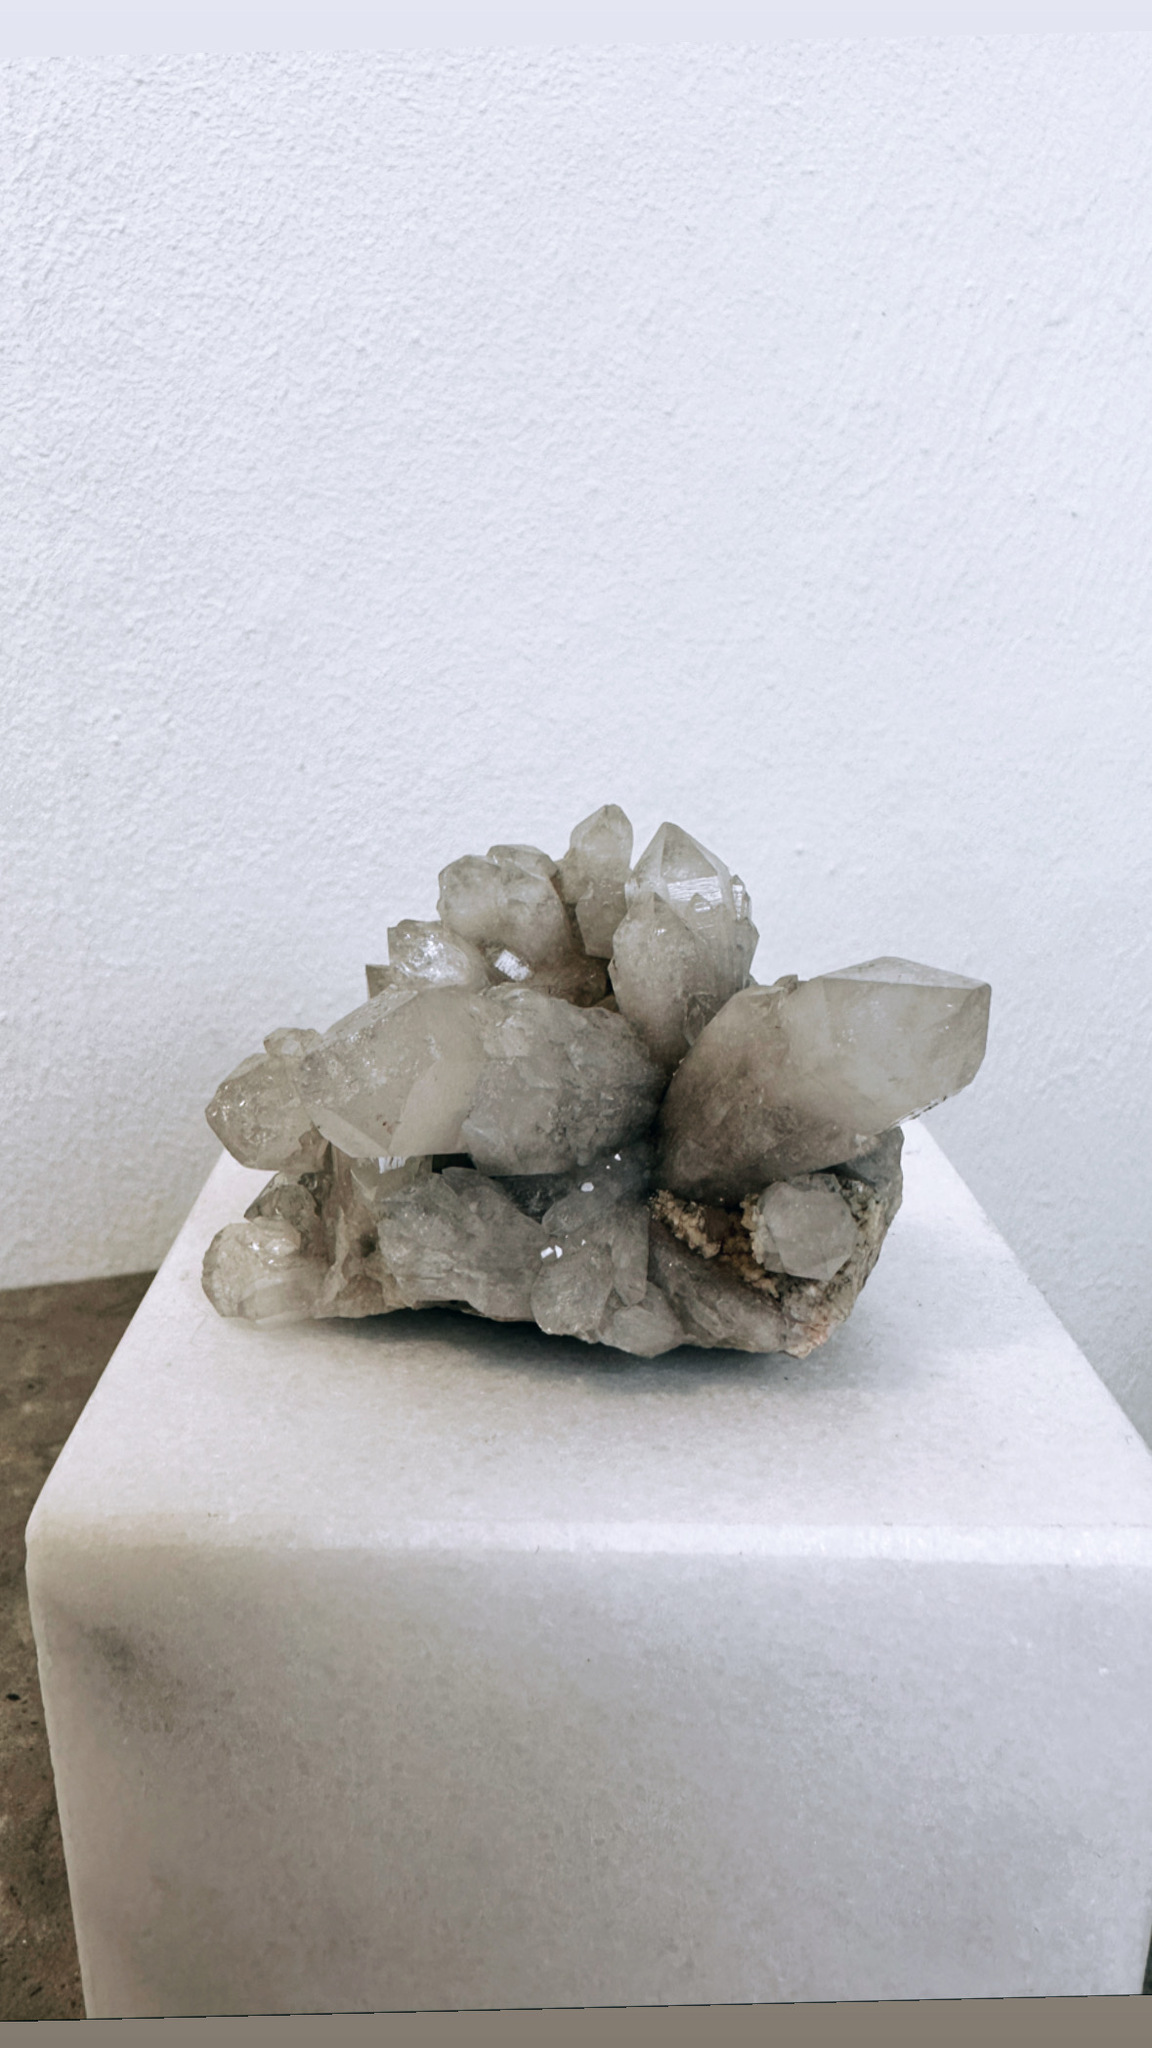 Bergkristall, kluster från Riksgränsen